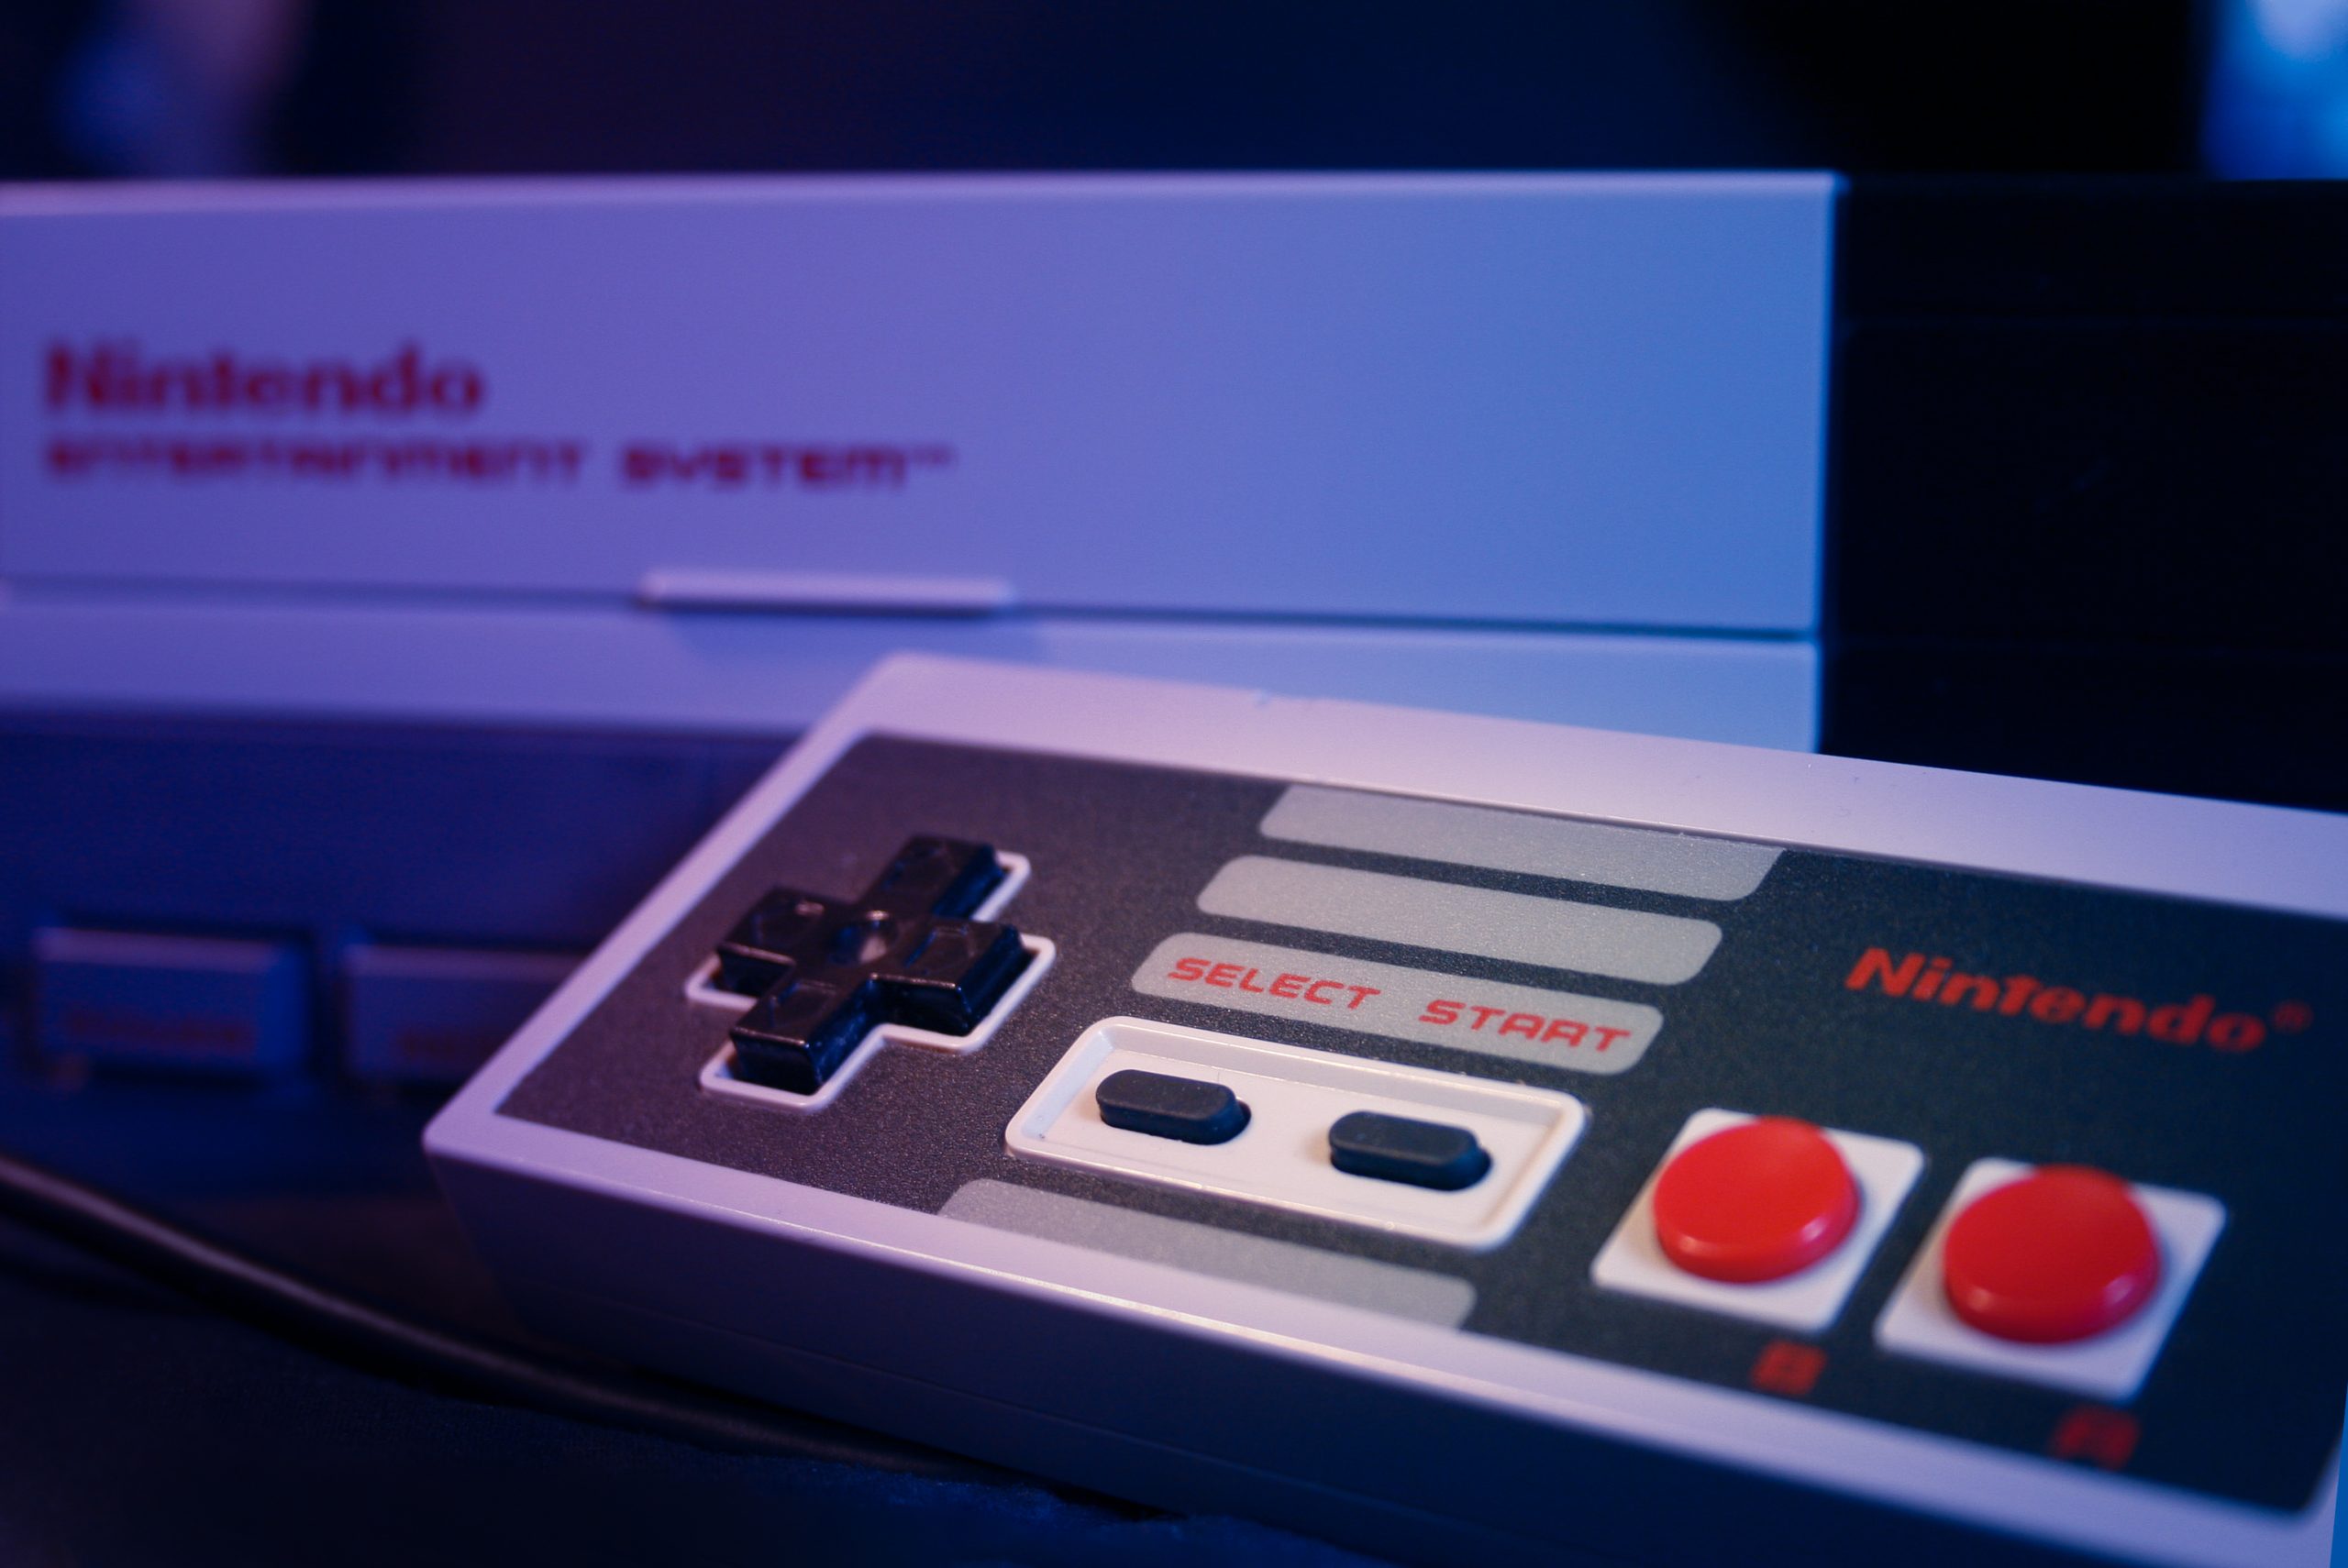 Imagem mostra o console "Nintendinho" - nome oficial do NES - em destaque para o seu controle